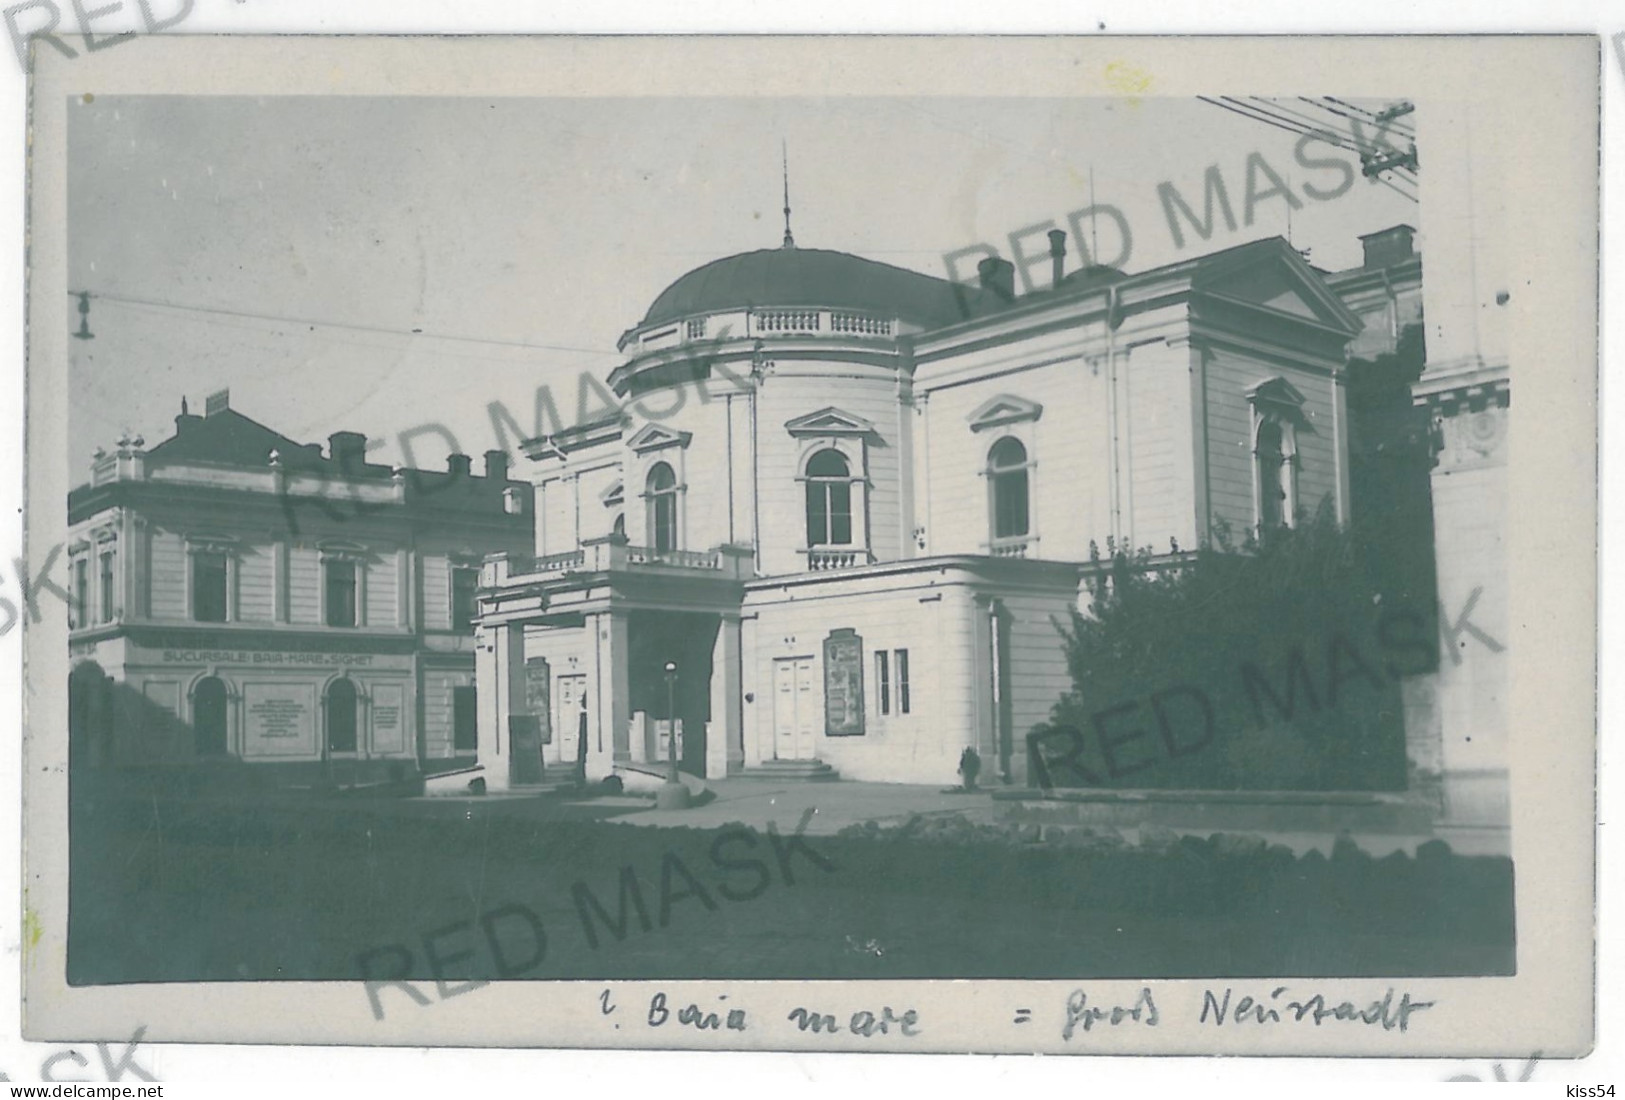 RO 82 - 11400 BAIA MARE, Maramures, Romania - Old Postcard, Real PHOTO - Used - 1928 - Roumanie